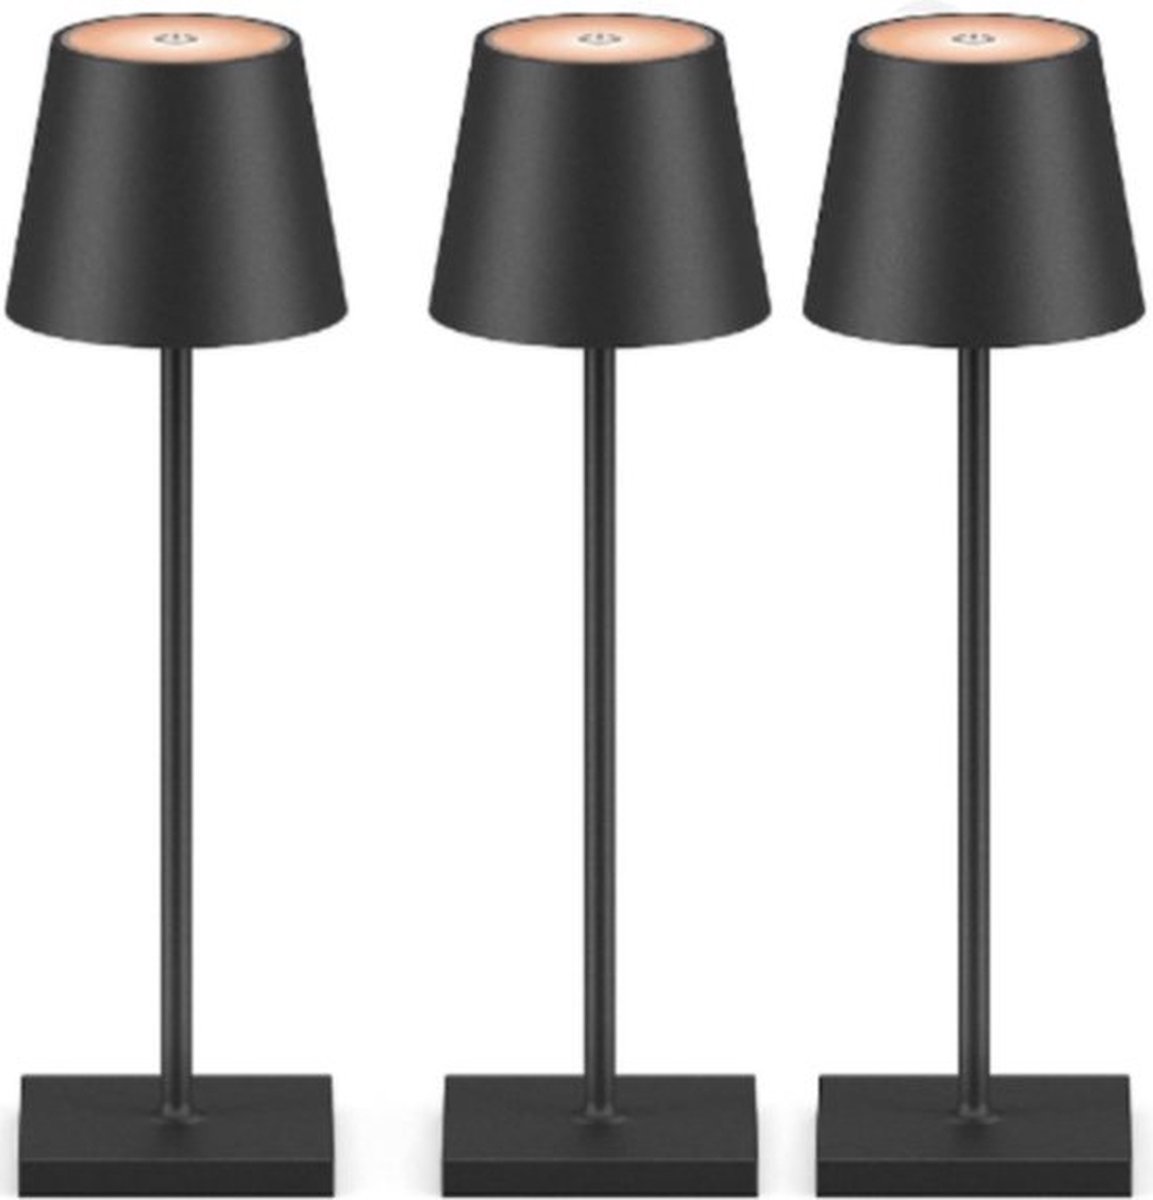 Tafellamp - Waterdicht - Draagbaar - Oplaadbaar - Warm Wit Licht - Zwart - Campinglamp - Dimbaar (3 STUKS)